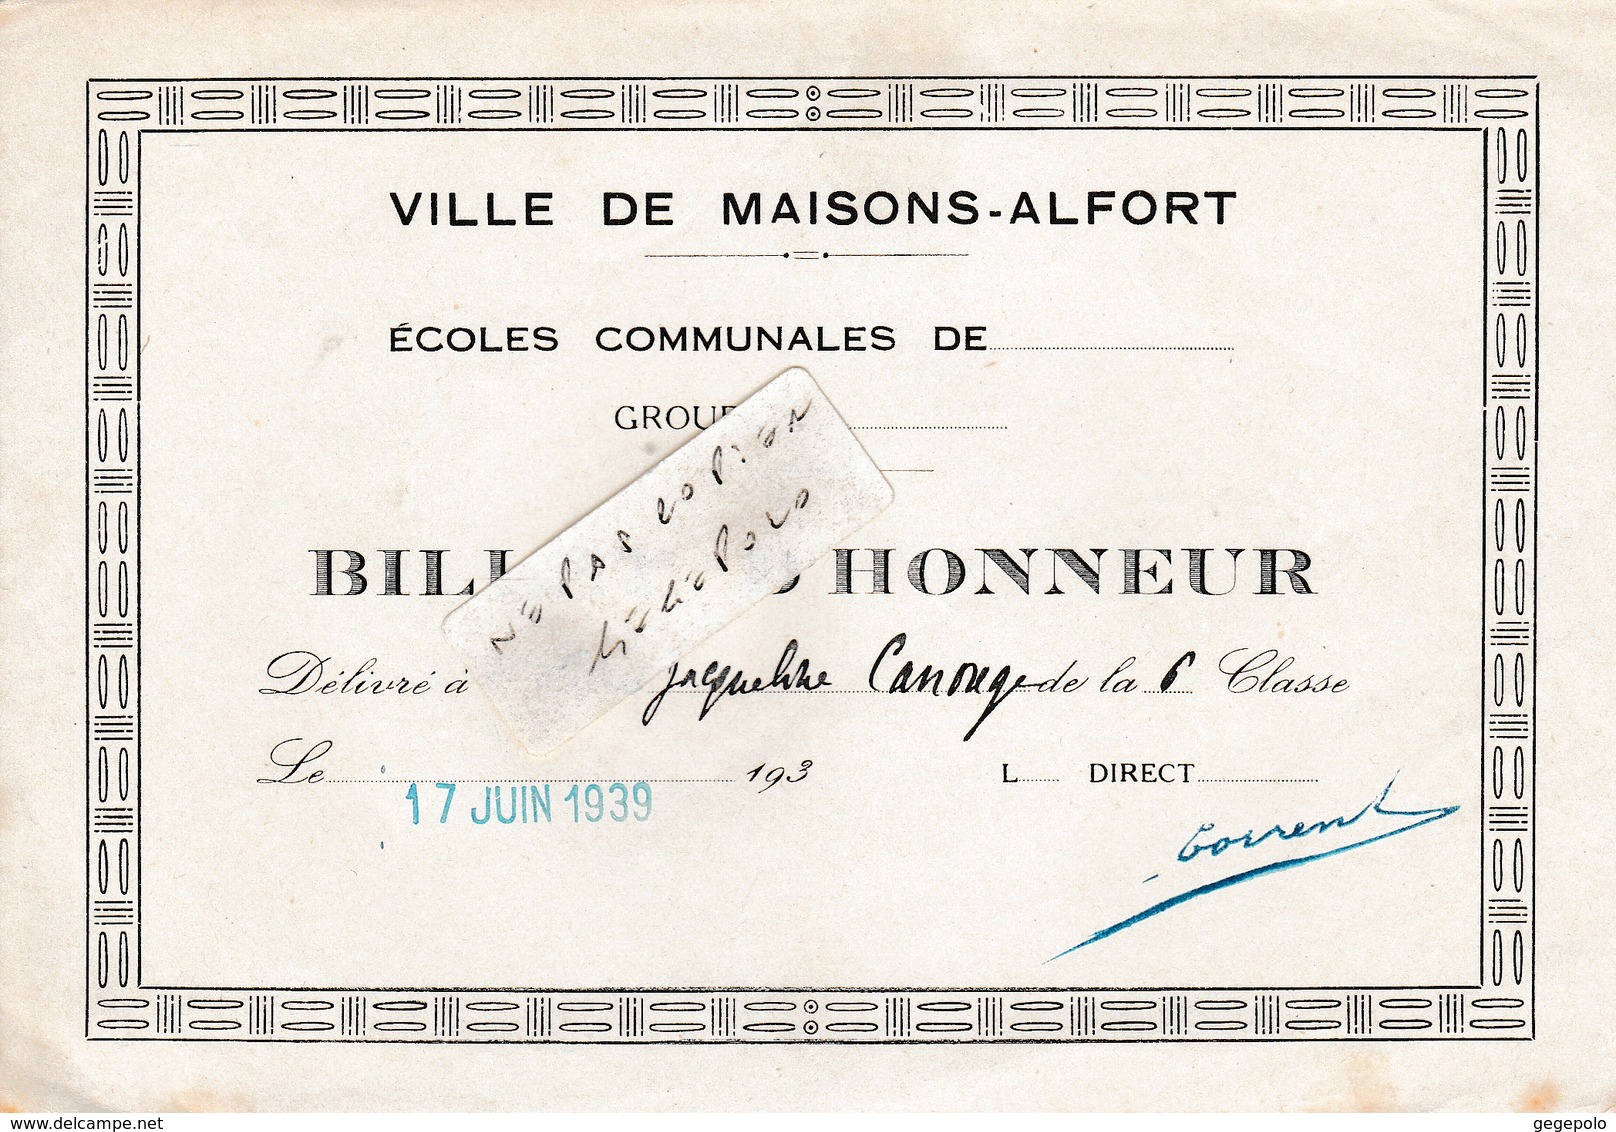 Ville De MAISONS-ALFORT (94) - Ecoles Communales Jules Ferry -  ( 2 ) Billet D'Honneur  ( En L'état D'usage ) - Diploma & School Reports